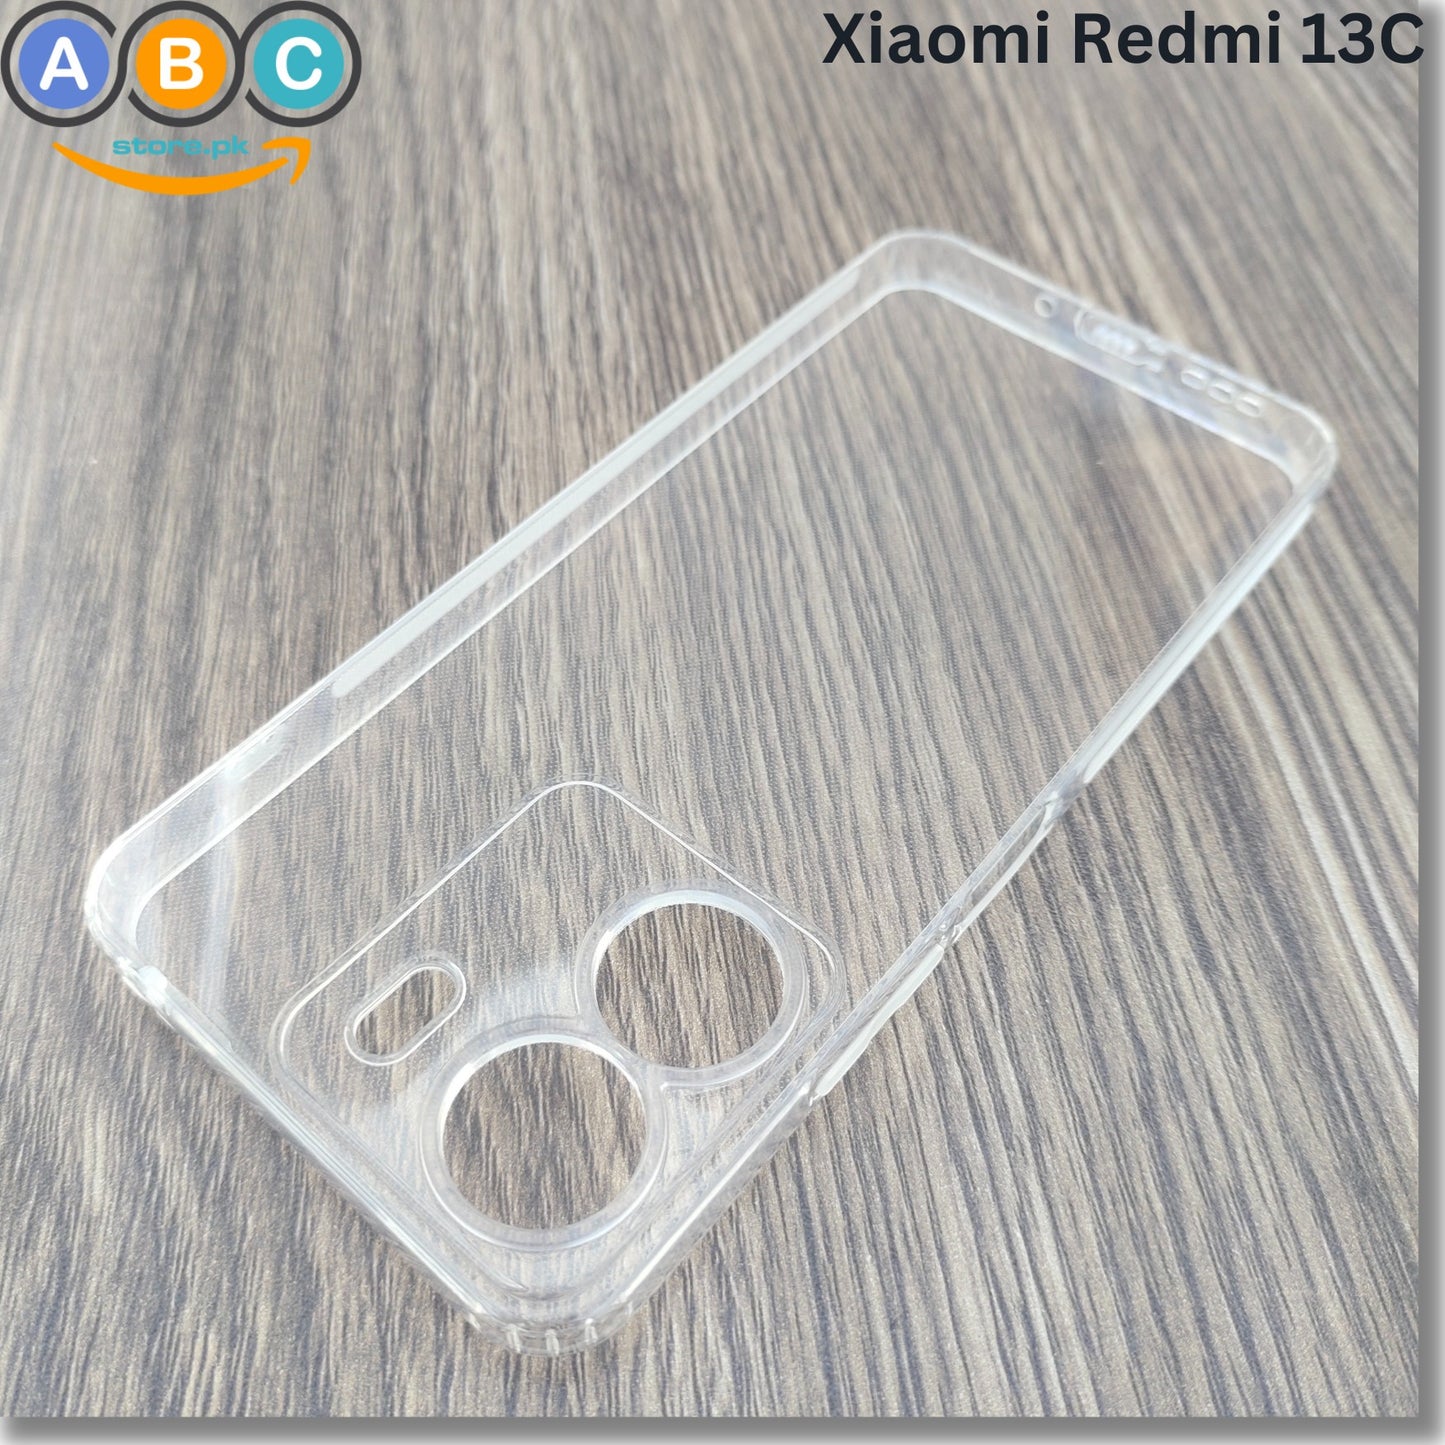 Xiaomi Redmi 13C / Poco C65 Case, Soft TPU with Dust Plugs (NO Corner Bumpers) Ultra Clear Back Cover